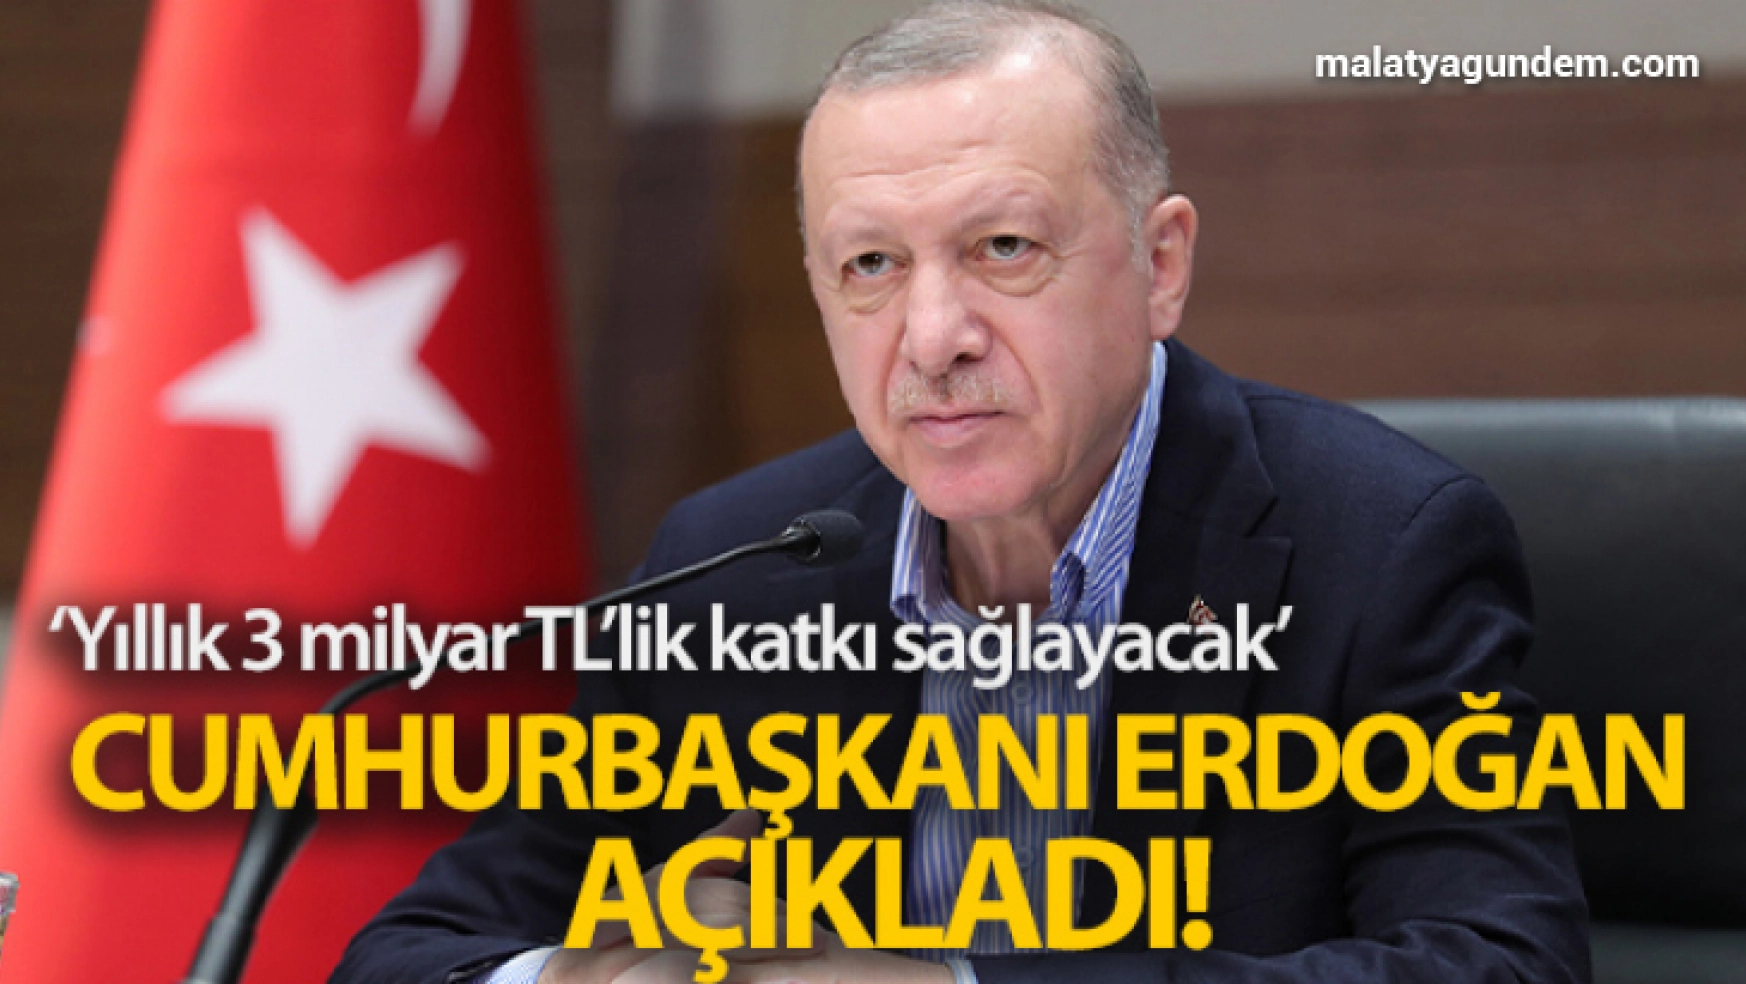 Cumhurbaşkanı Erdoğan Ilısu Barajı açılış töreninde konuştu